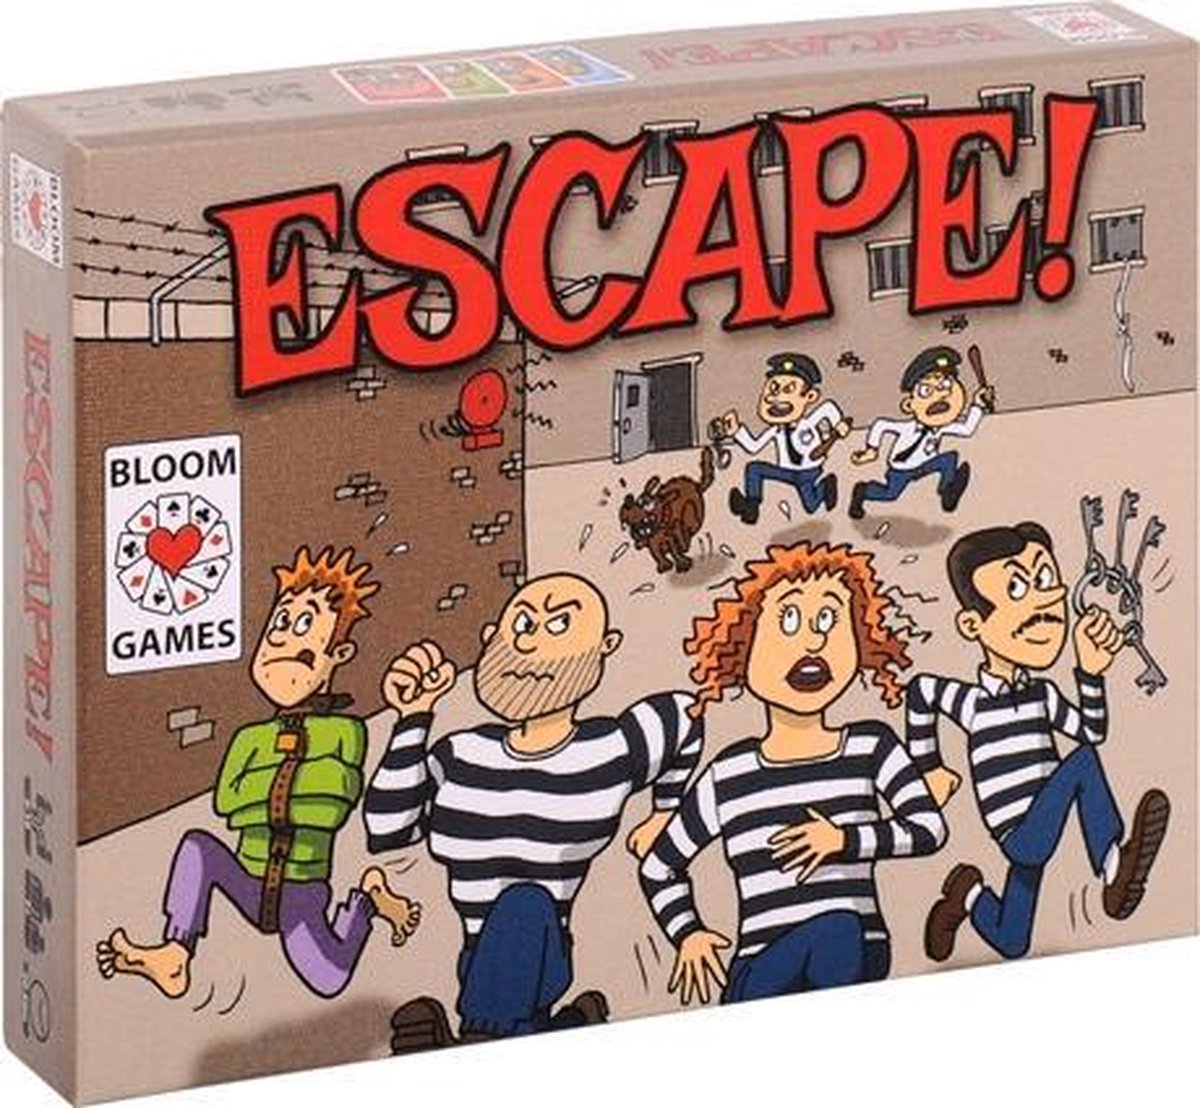 Commandant passen Wees tevreden Escape! Kaartspel - gebaseerd op Pesten | Games | bol.com